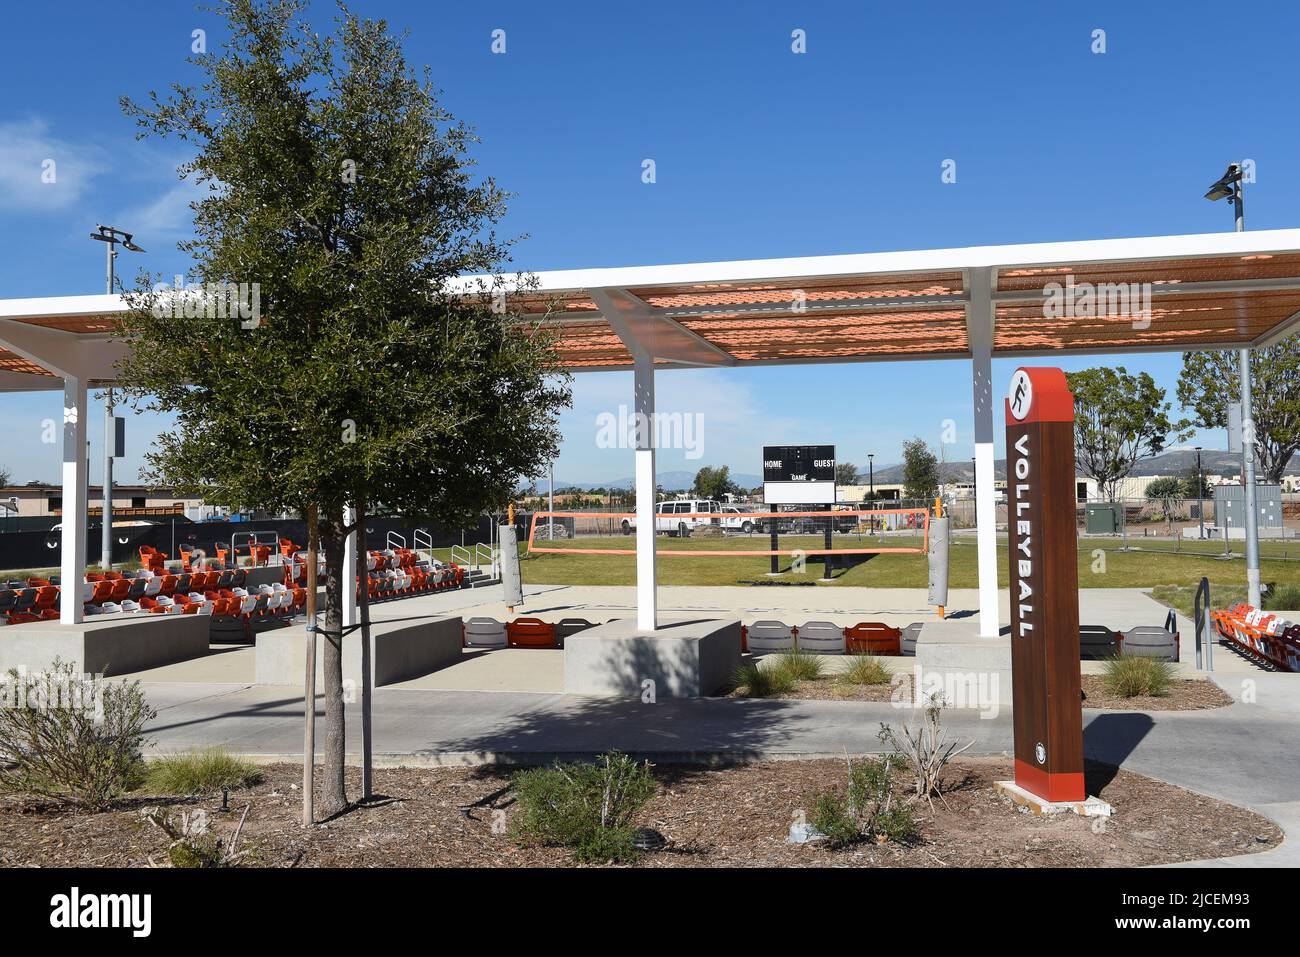 IRVINE, CALIFORNIE, 31 JANV. 2020 : terrain de volley-ball de championnat de sable au Grand parc du comté d'Orange. Le stade peut accueillir 178 spectateurs. Banque D'Images